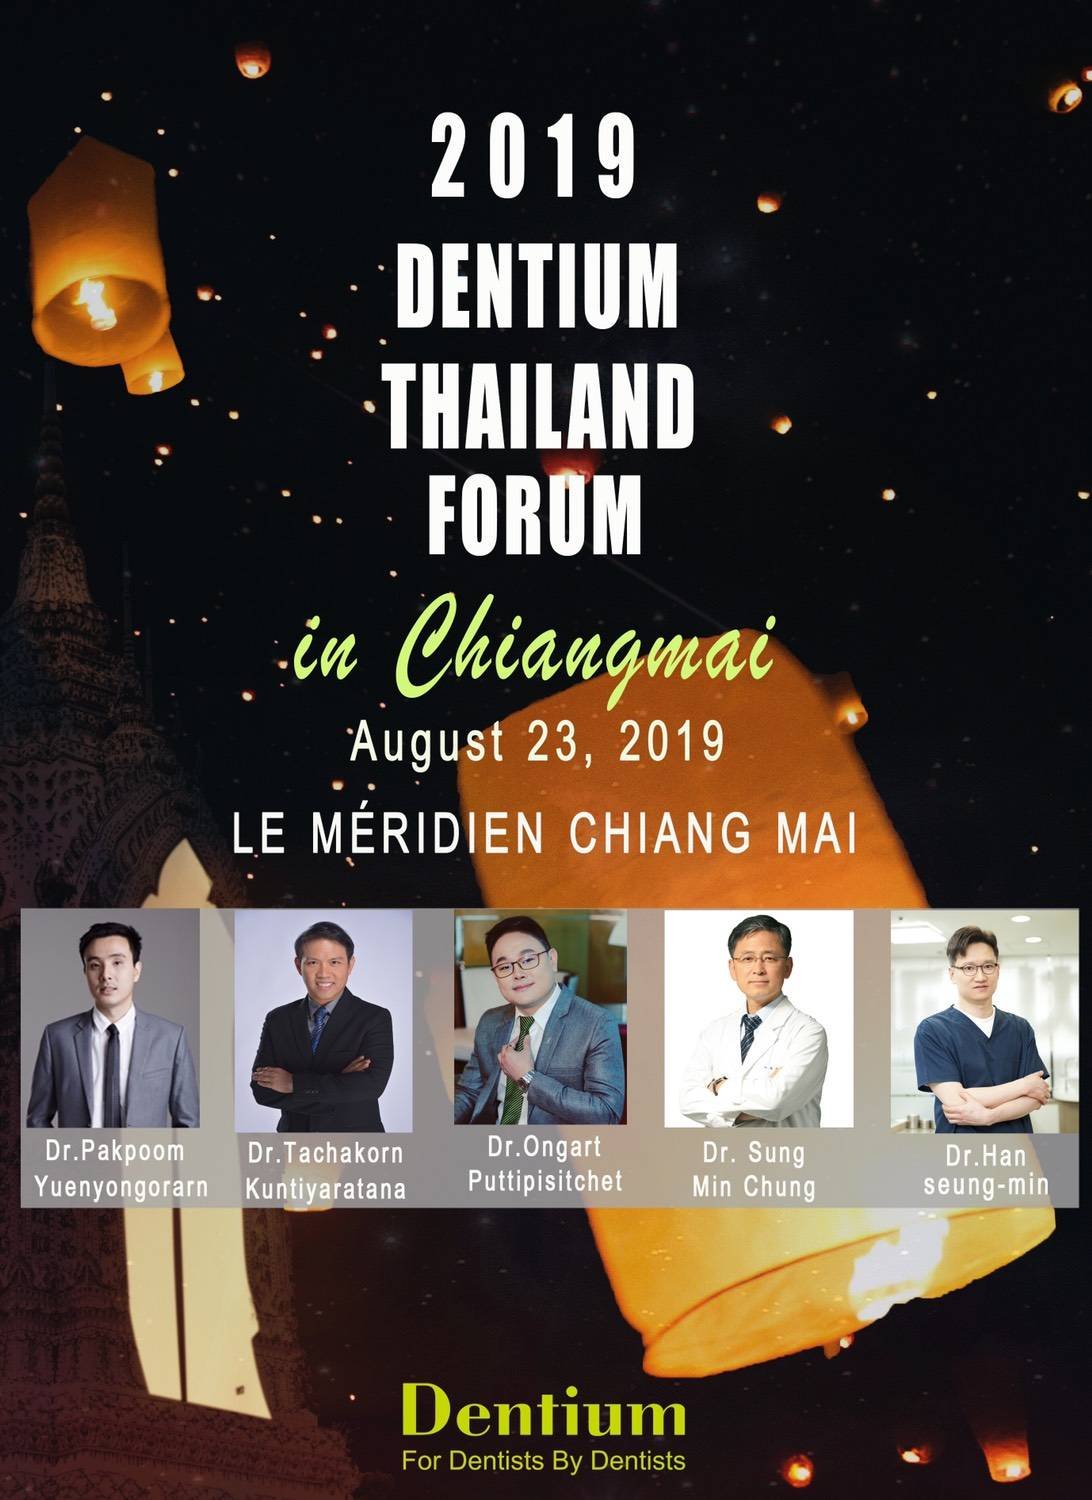 2019 DENTIUM THAILAND FORUM IN CHIANGMAI